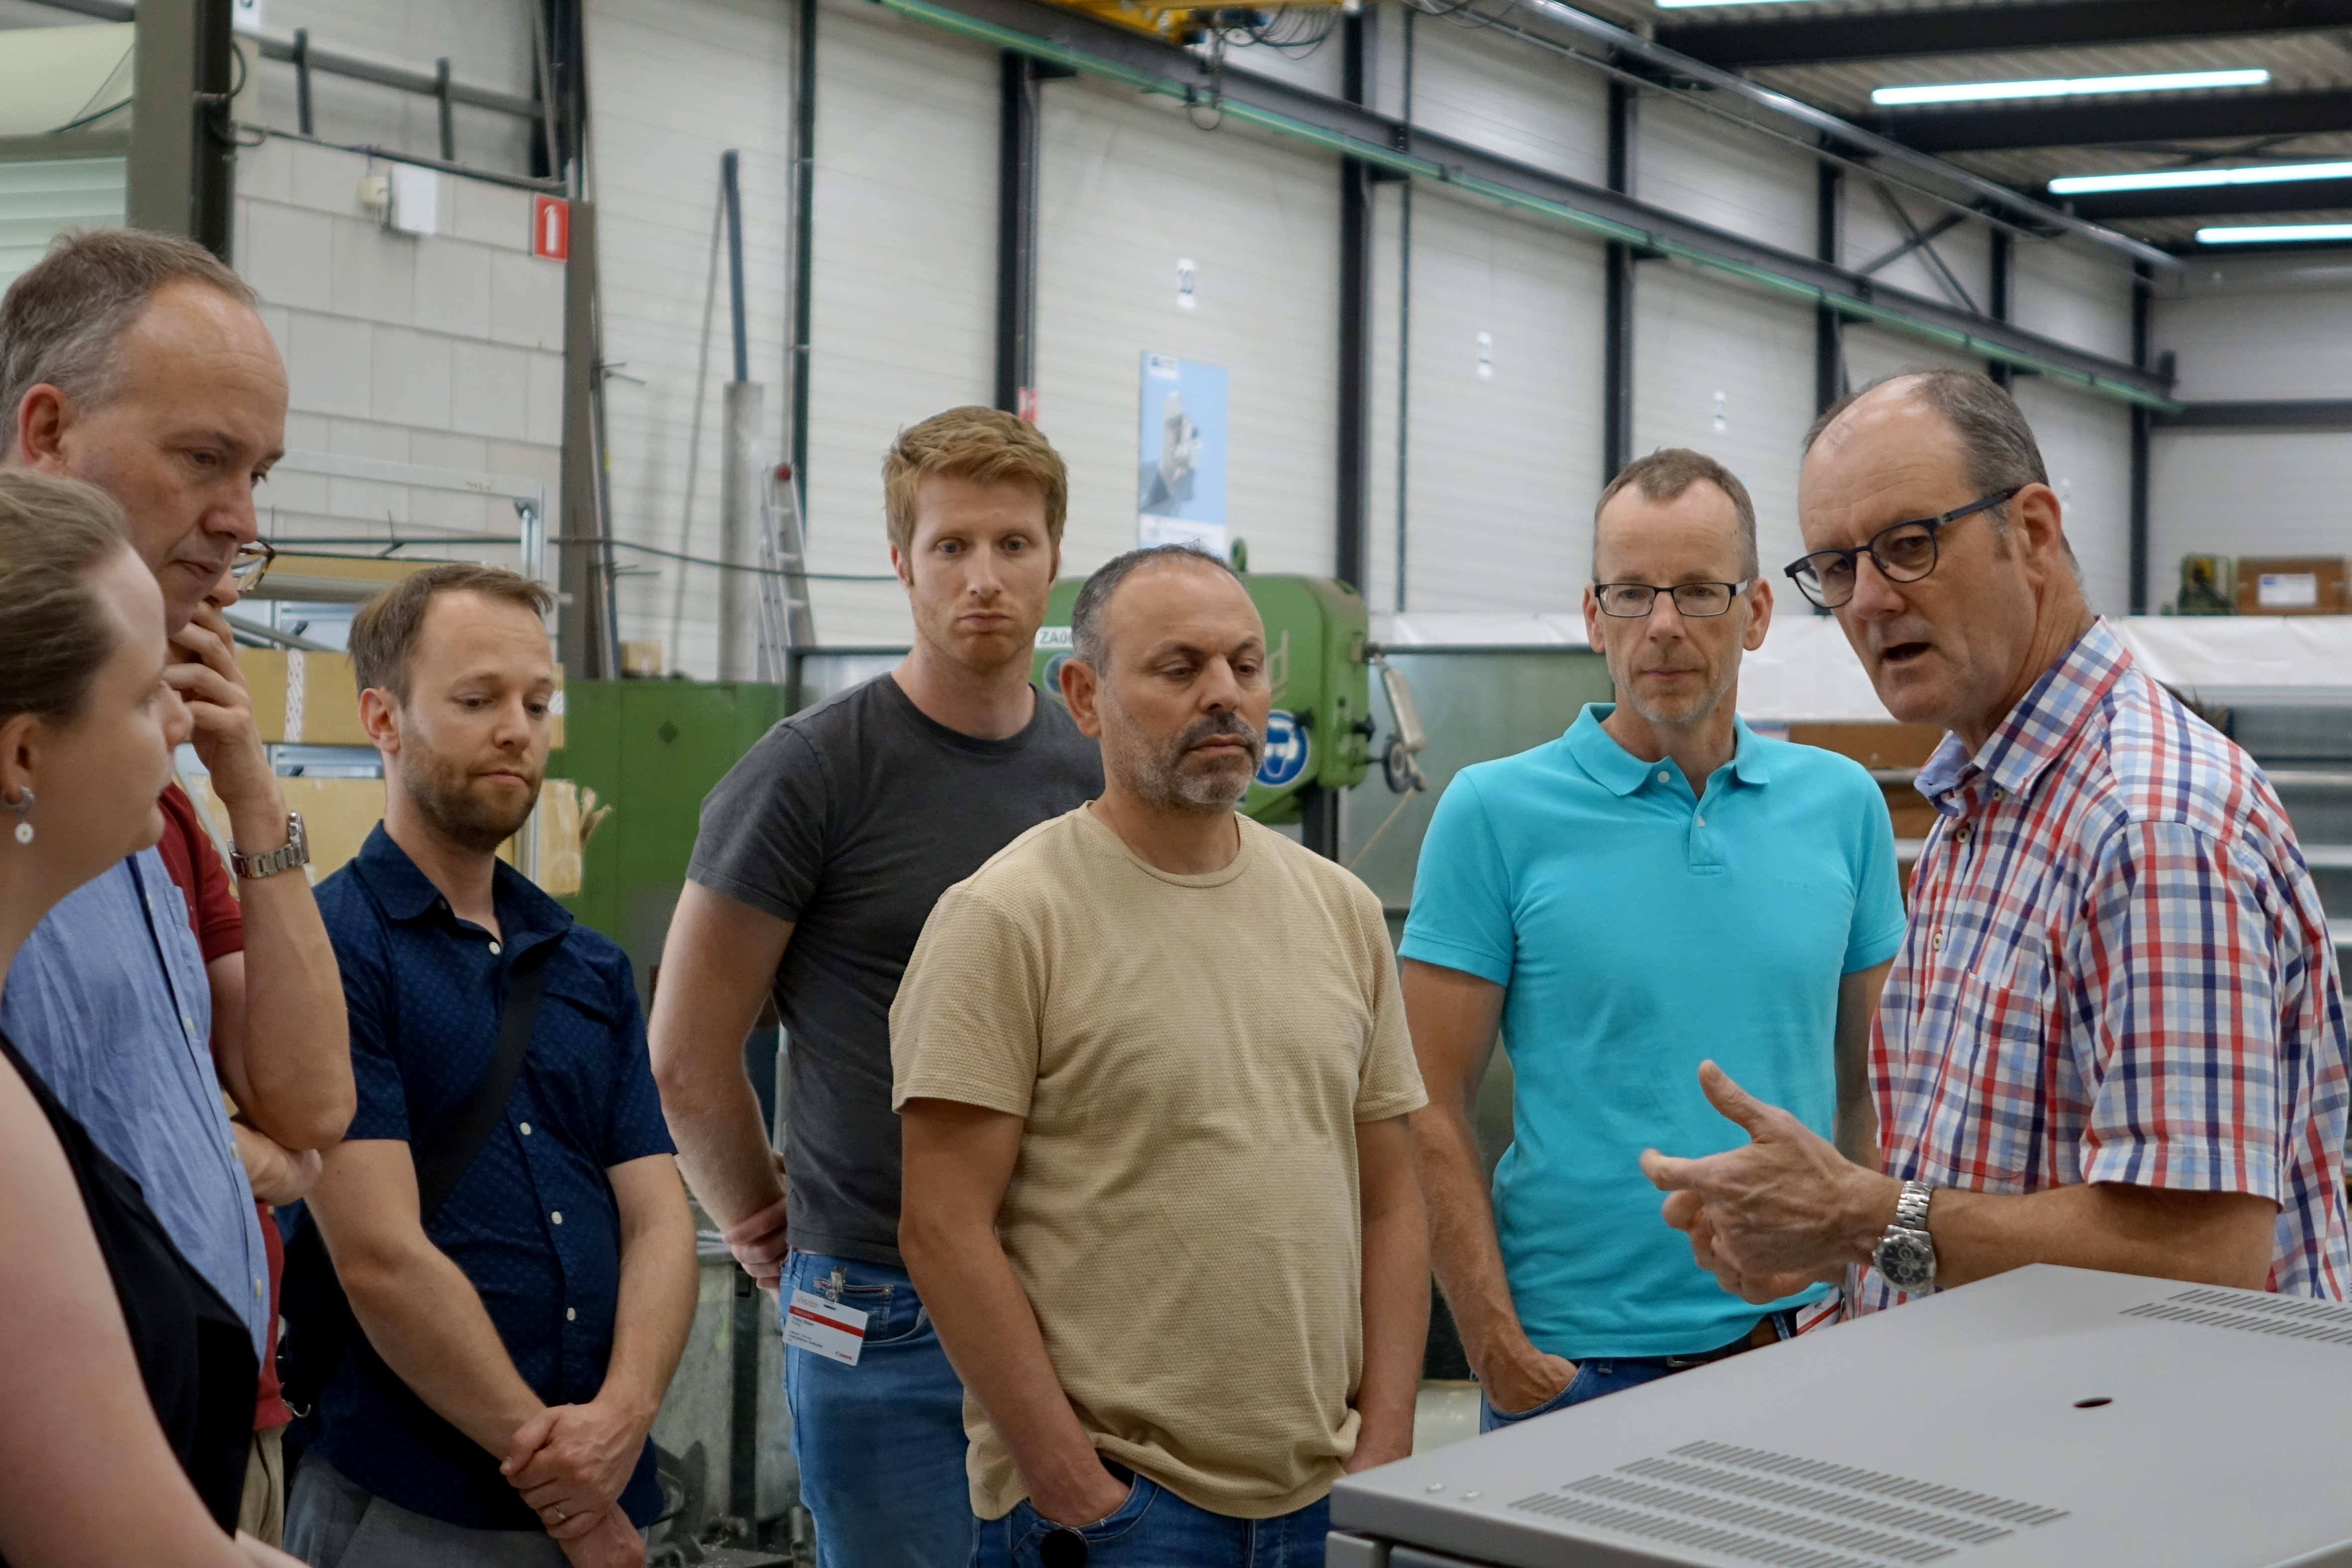 Canon Production Printing op bezoek bij Manders Automation. John Thijssen geeft de groep uitleg over sealmachines.